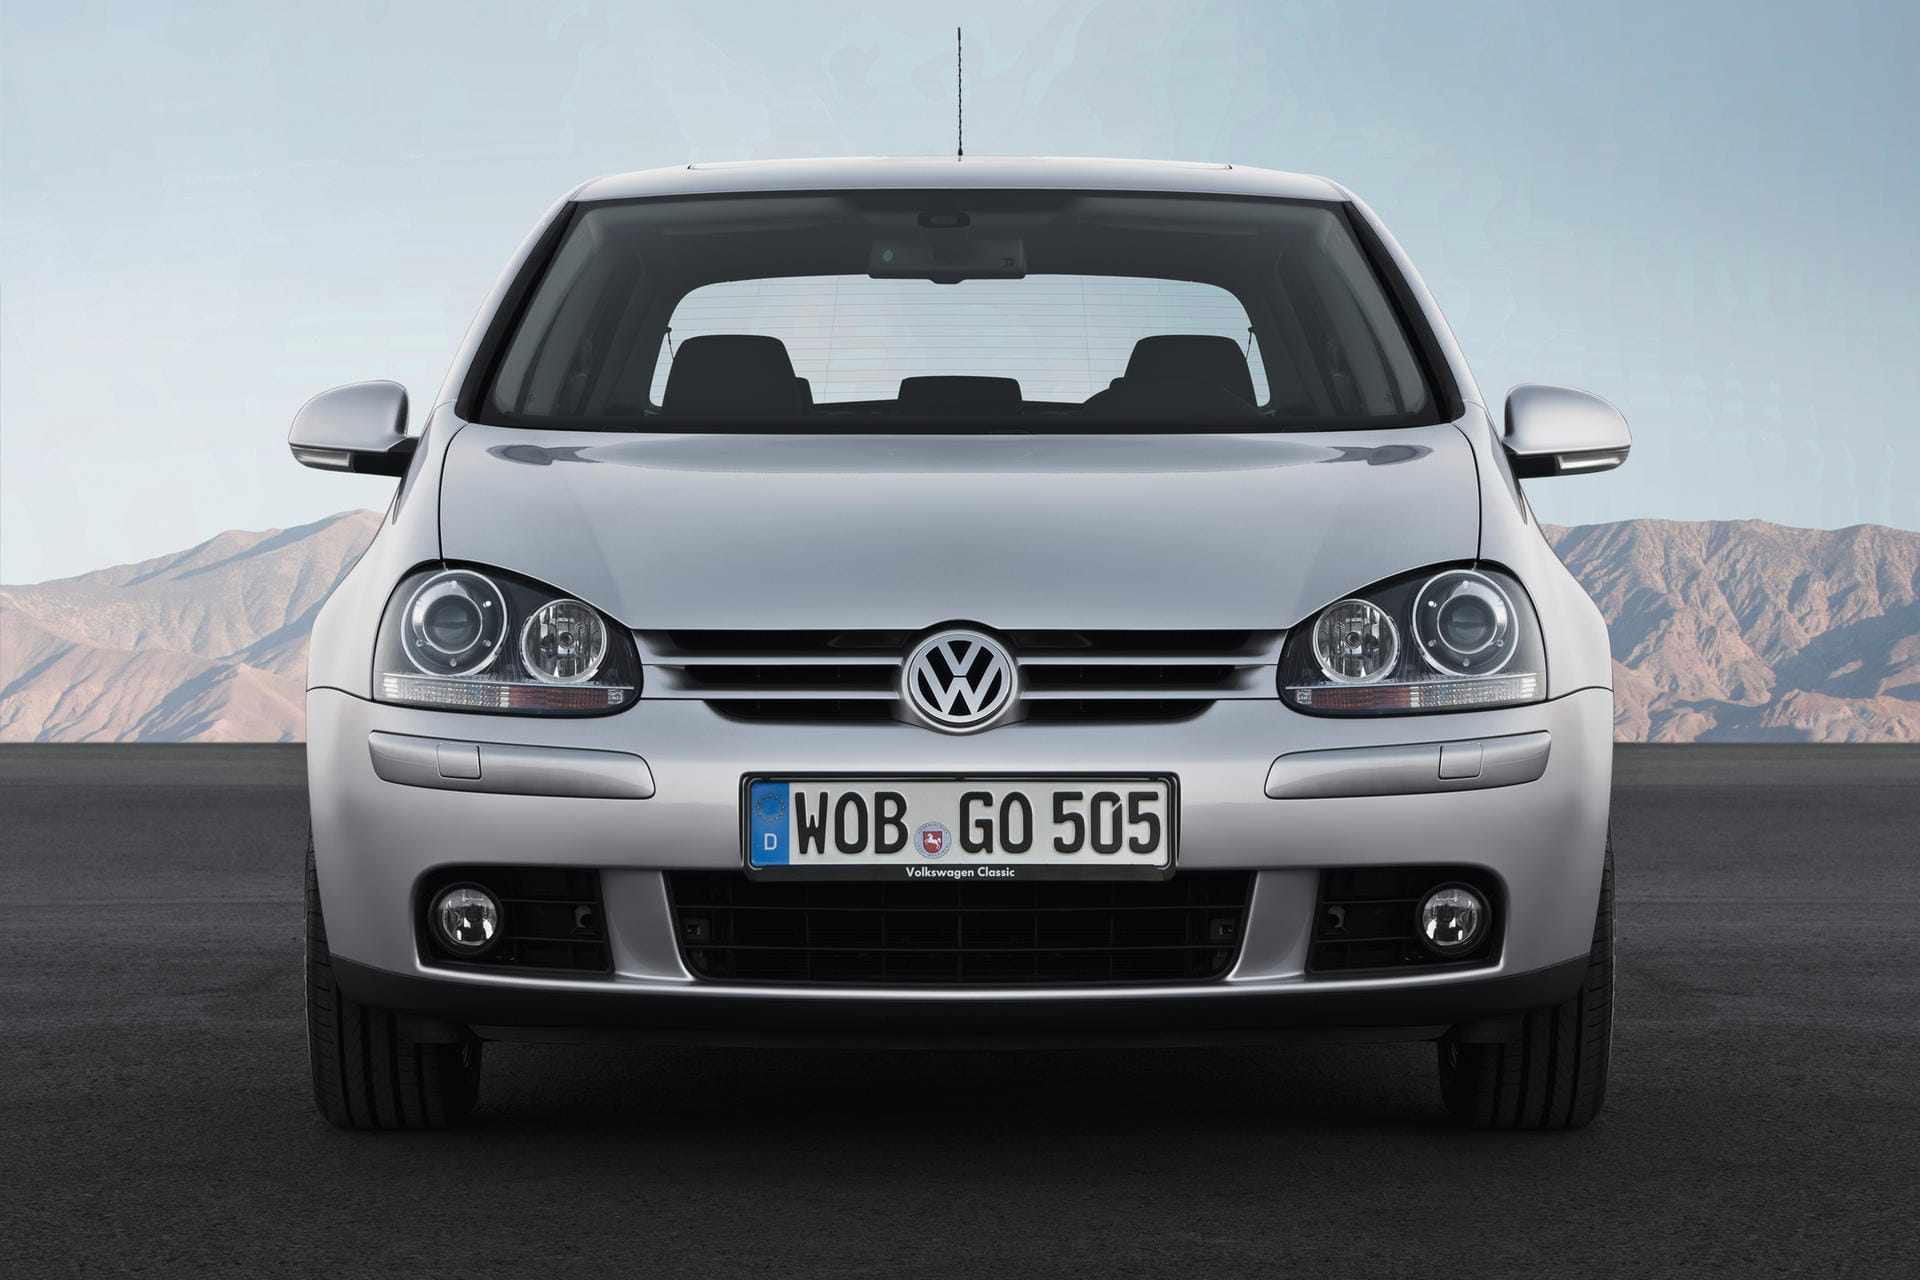 Der VW Golf V: Die fünfte Generation, die von 2003 bis 2008 gebaut wurde, hebt sich vor allem in puncto Qualität, Komfort und Dynamik von seinen Vorgängern ab.